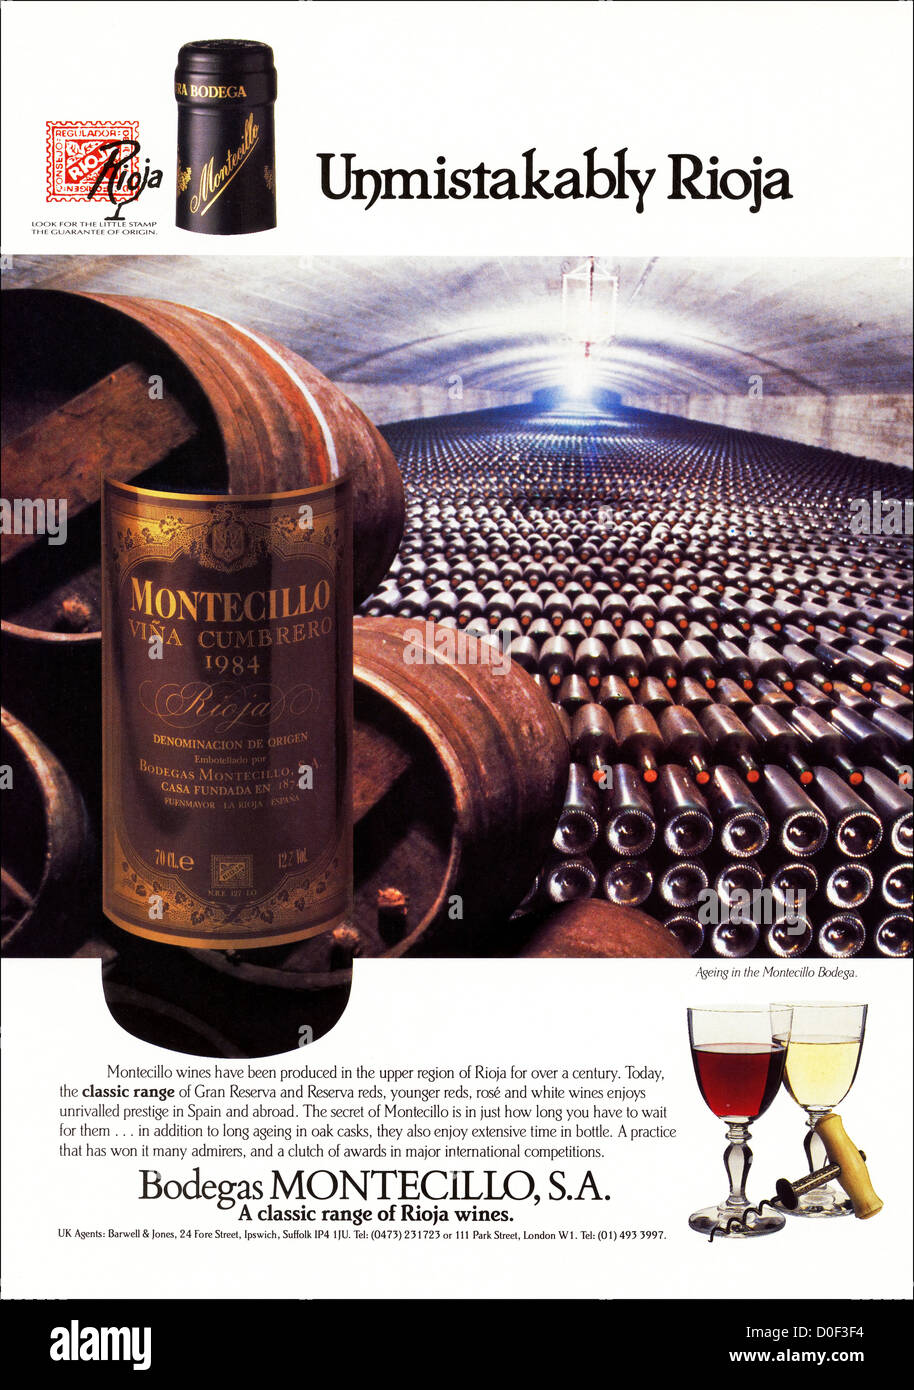 Originale degli anni ottanta per la pubblicità a mezzo stampa dal consumatore inglese pubblicità su riviste Rioja Bodegas Montecillo vino Spagnolo Foto Stock